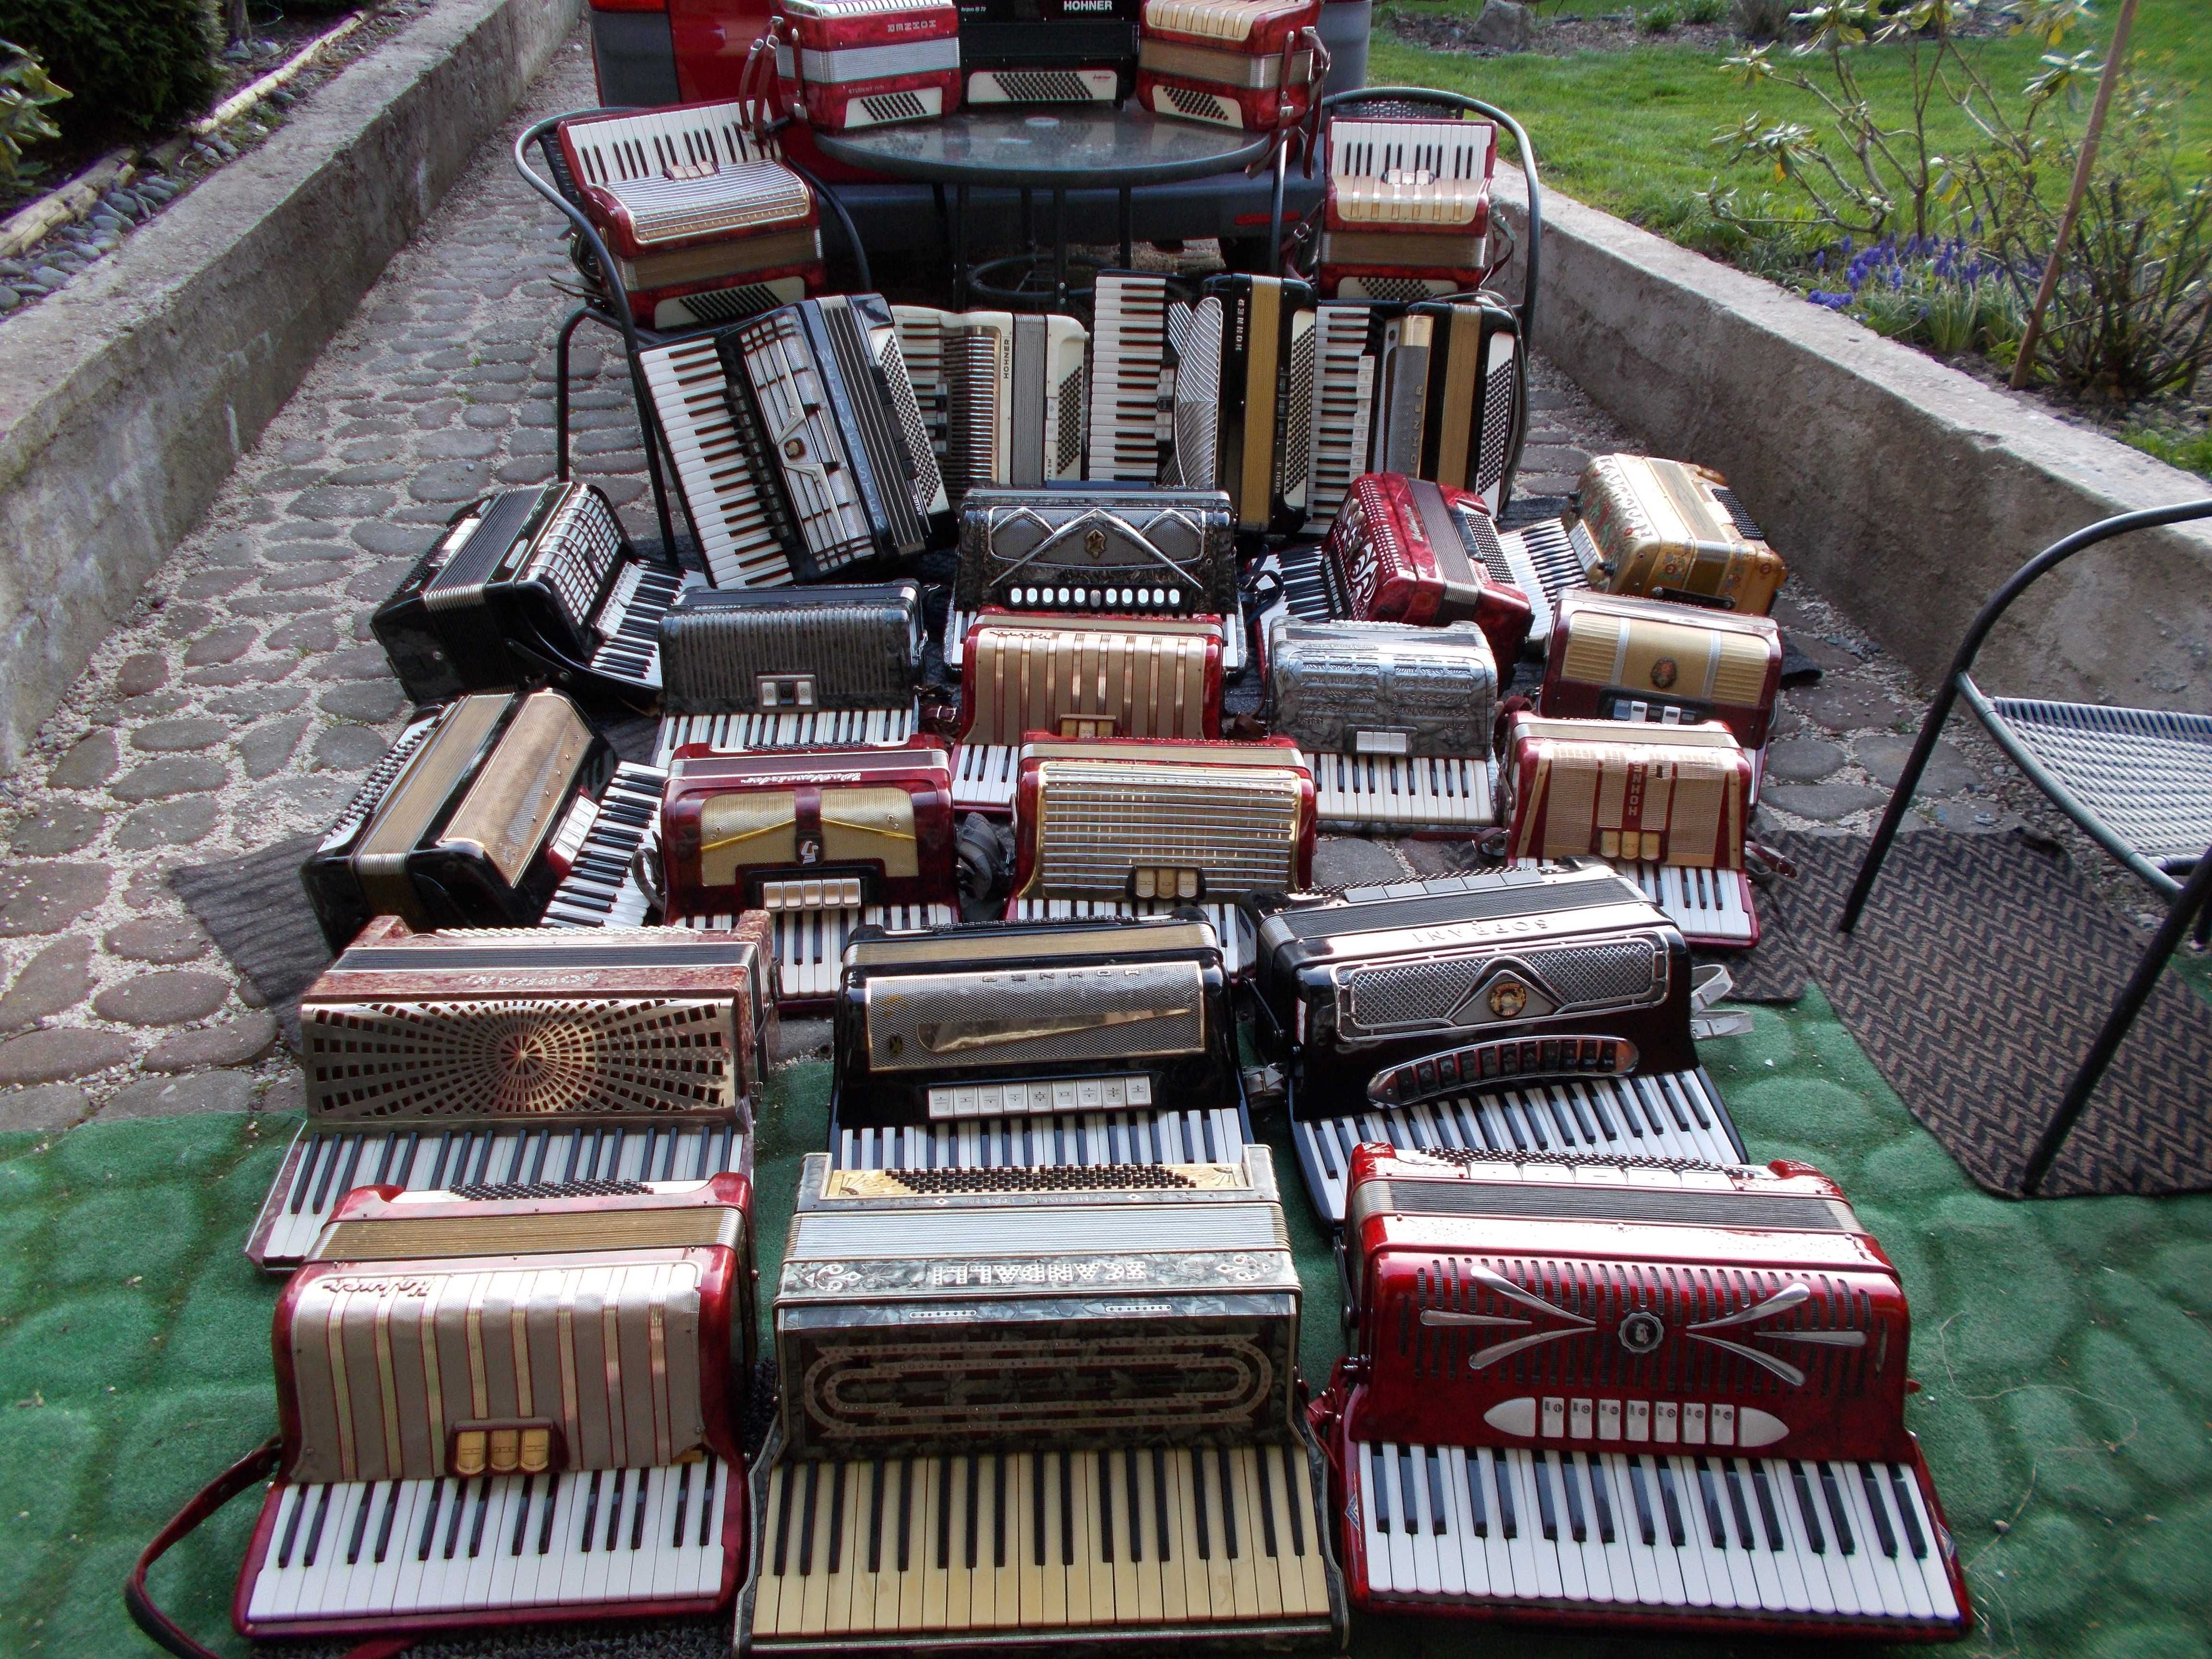 SERWIS naprawa strojenie i sprzedaż akordeonów /Kamienica/ Zbludza 118